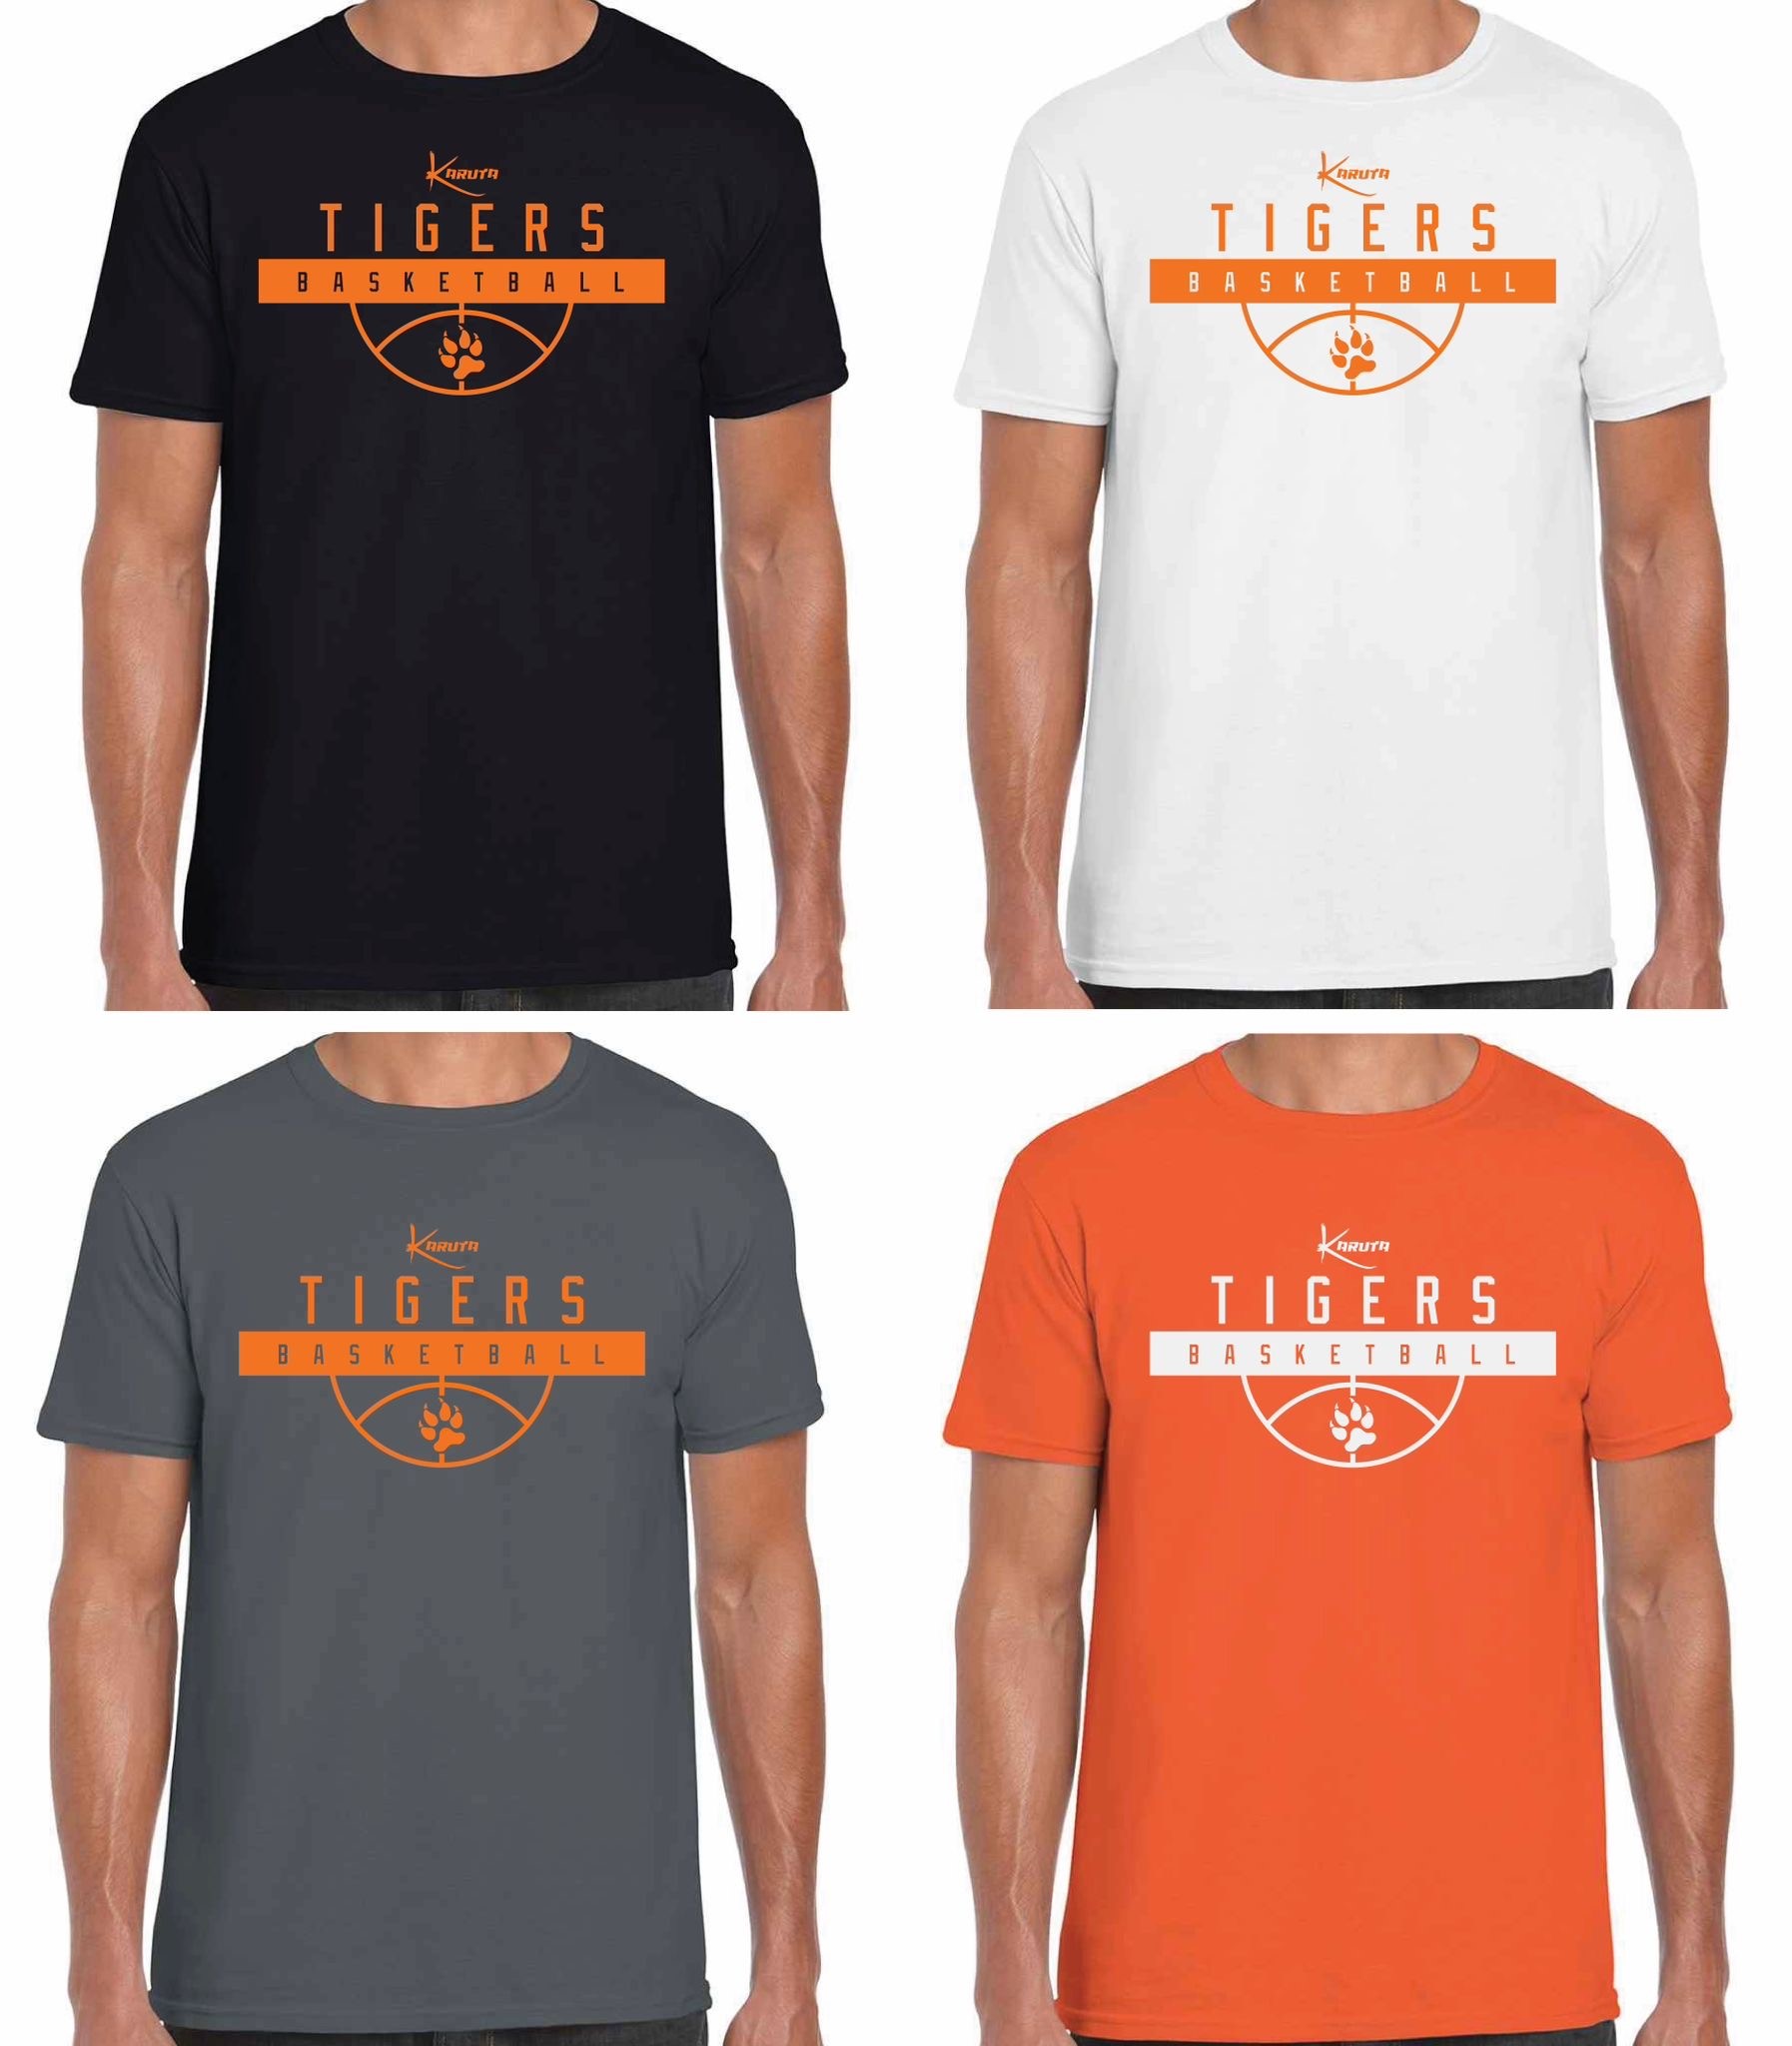 Tigers T-shirts